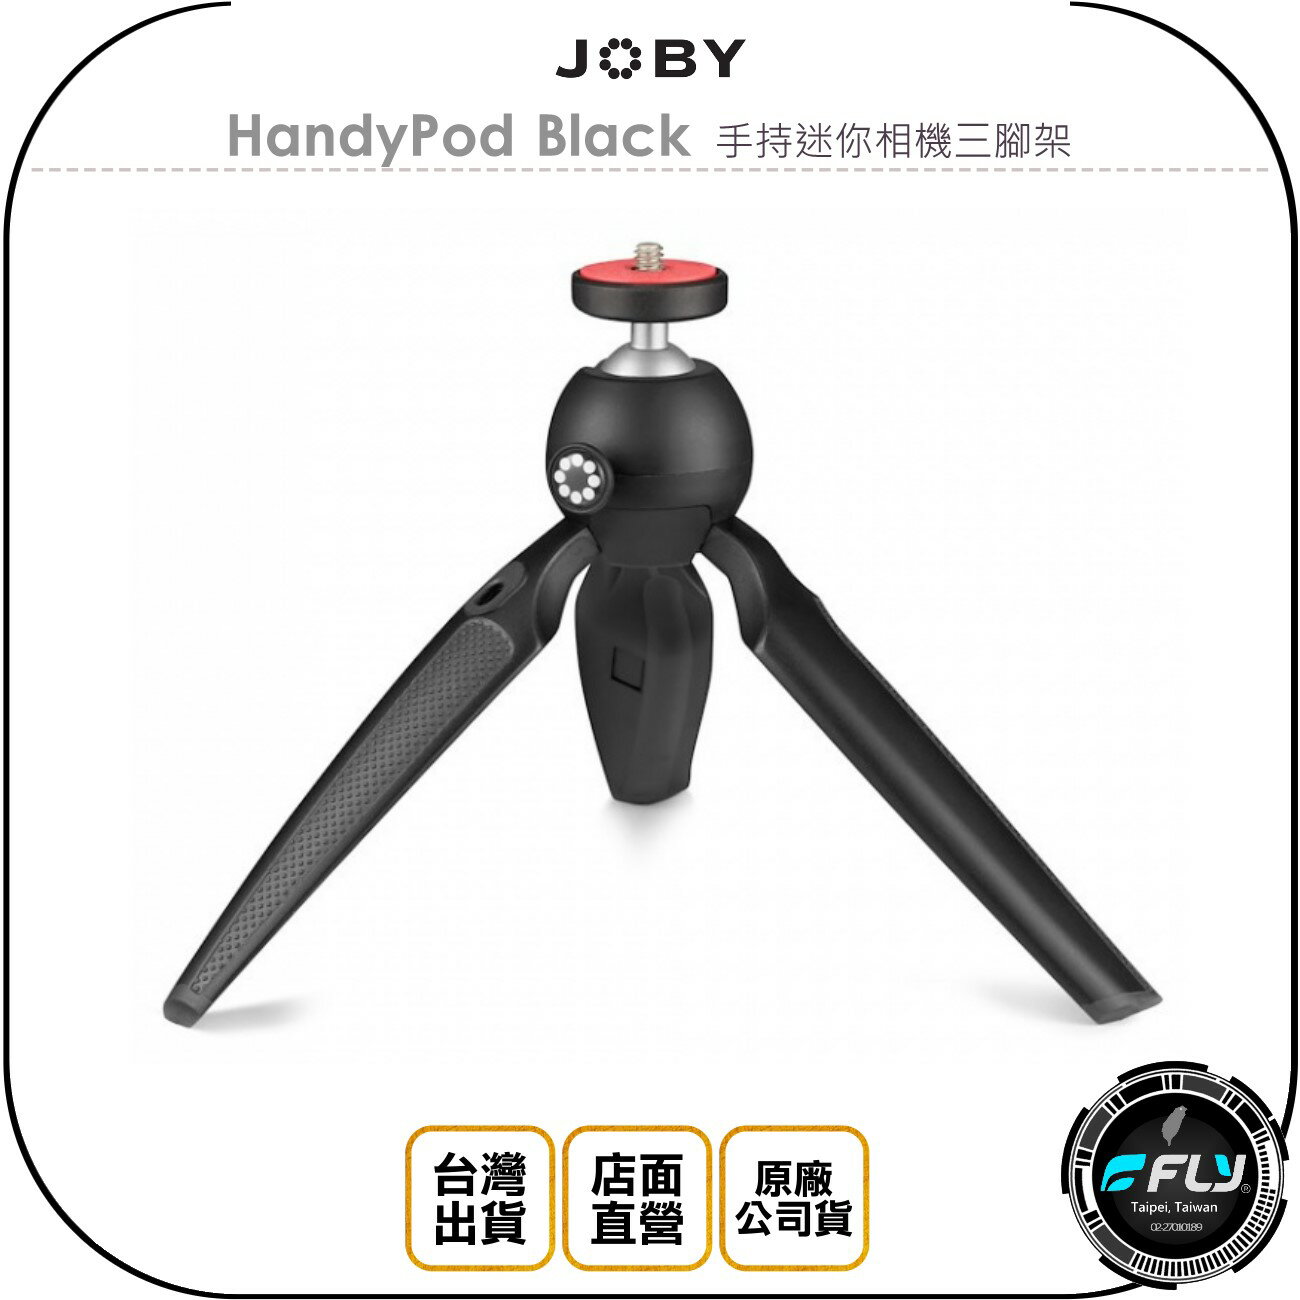 《飛翔無線3C》JOBY HandyPod Black 手持迷你相機三腳架◉公司貨◉旅遊攝影◉出遊攜帶◉自拍錄影